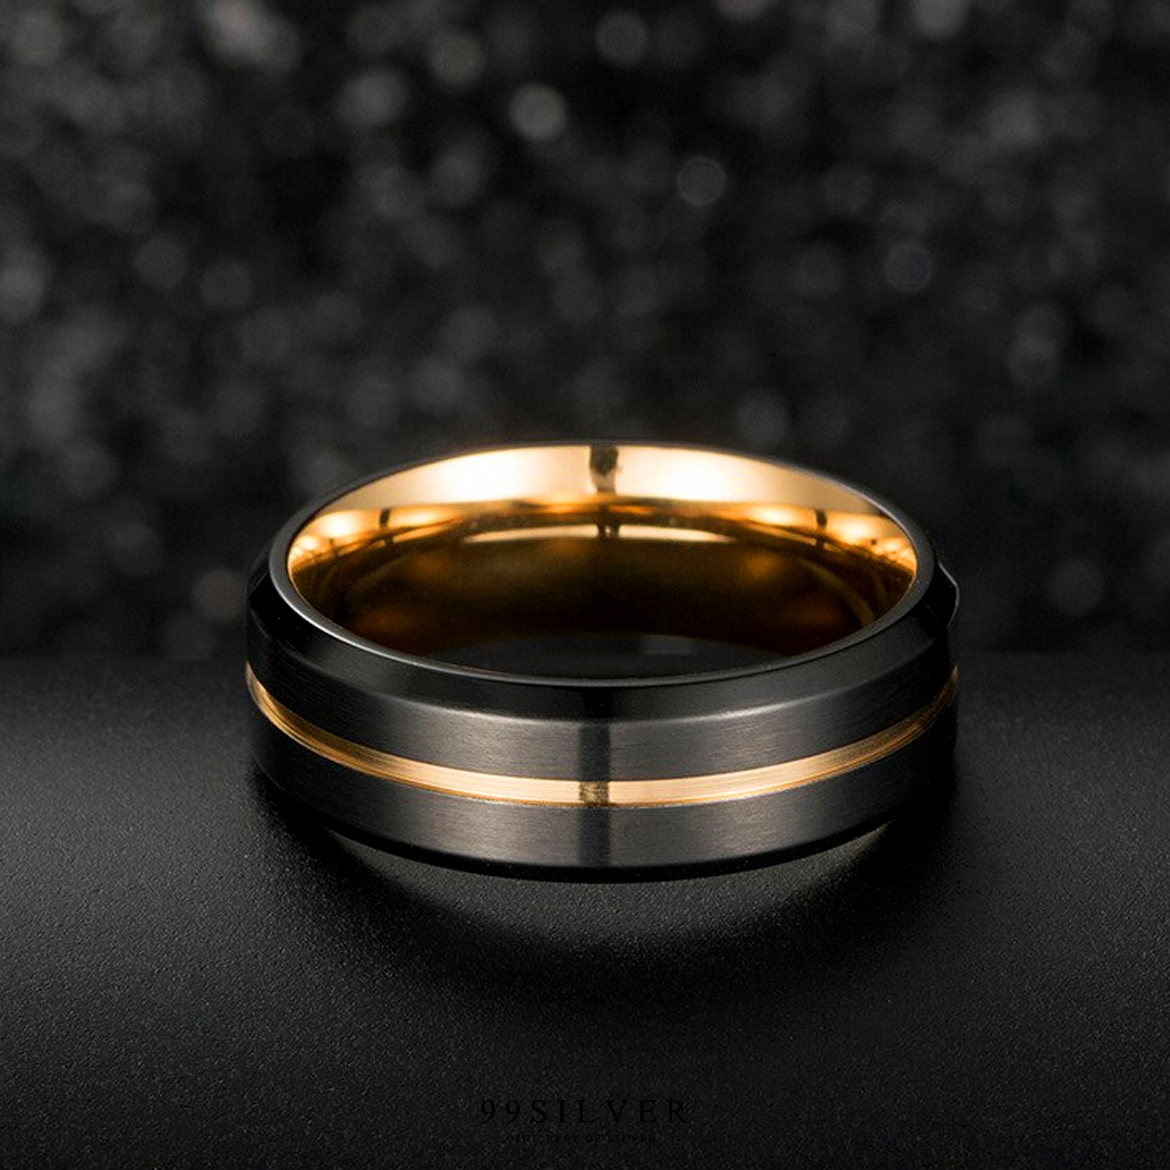 แหวนสแตนเลส Gold Black ไทเทเนี่ยม หน้ากว้าง 7 มิล ผิวเรียบปัดด้านแฮร์ไลน์